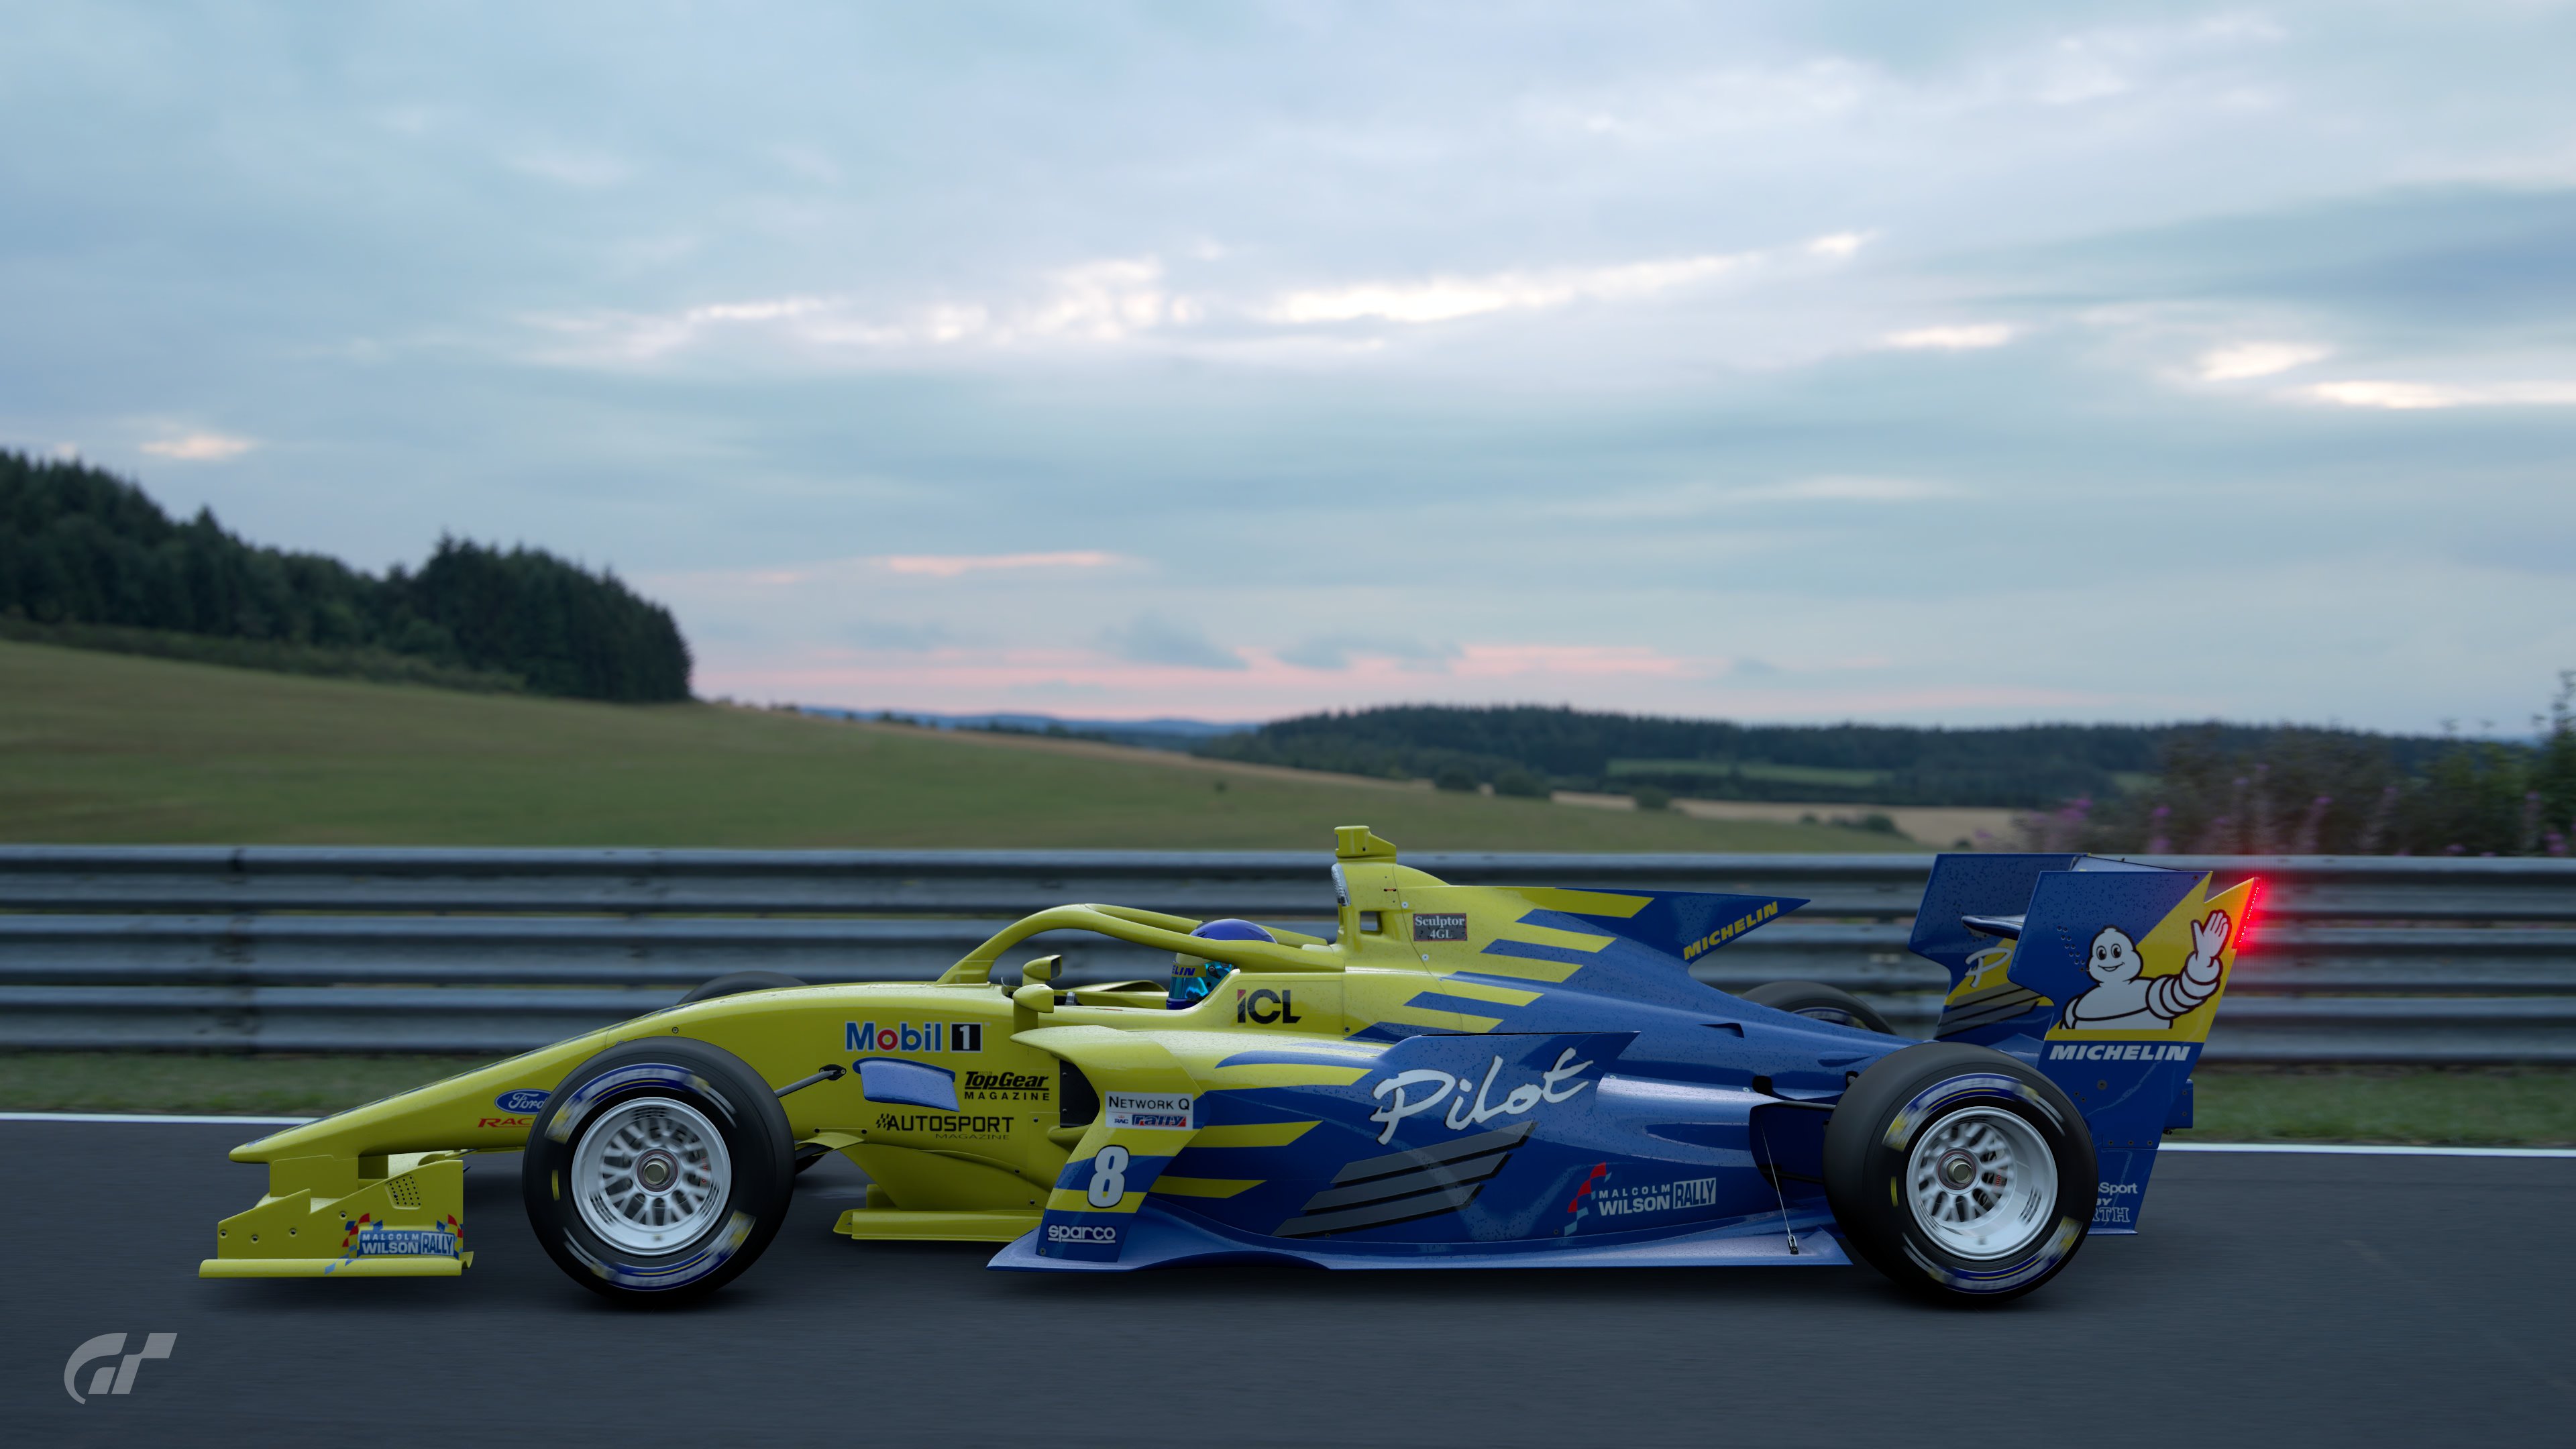 Michelin Pilot Cosworth F1